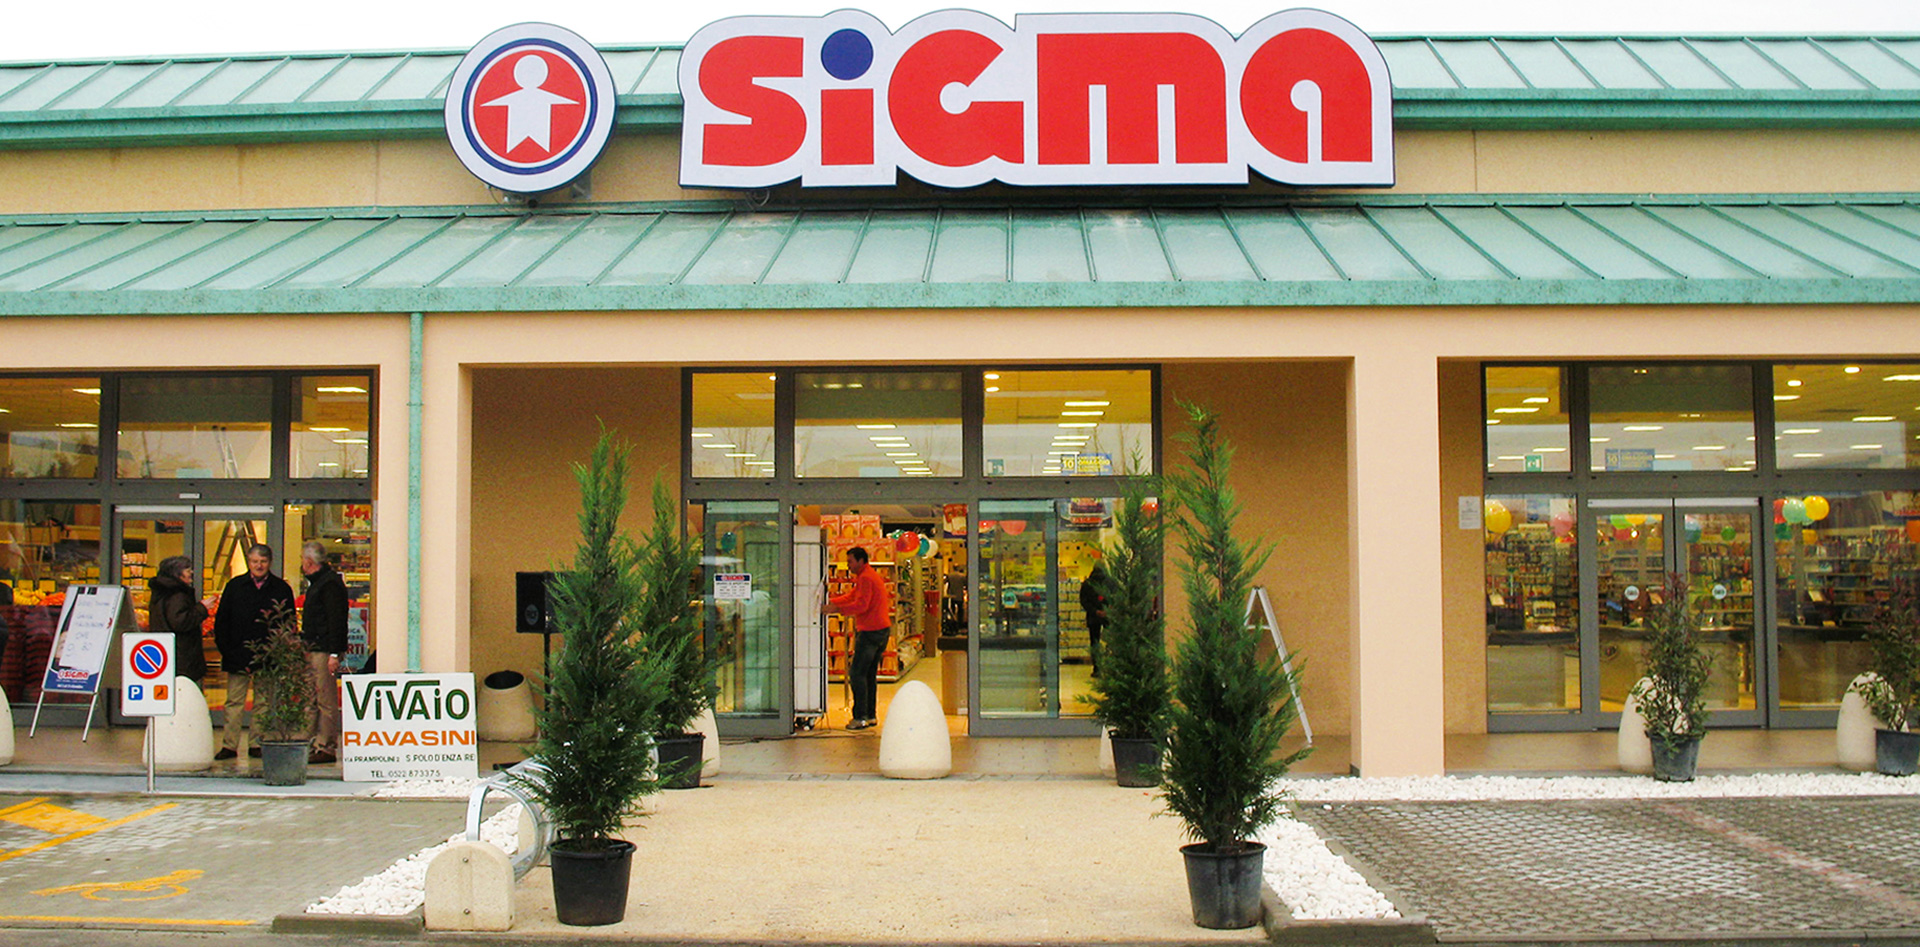 Supermercato Sigma, Binini Partners, Società di architettura e ingegneria